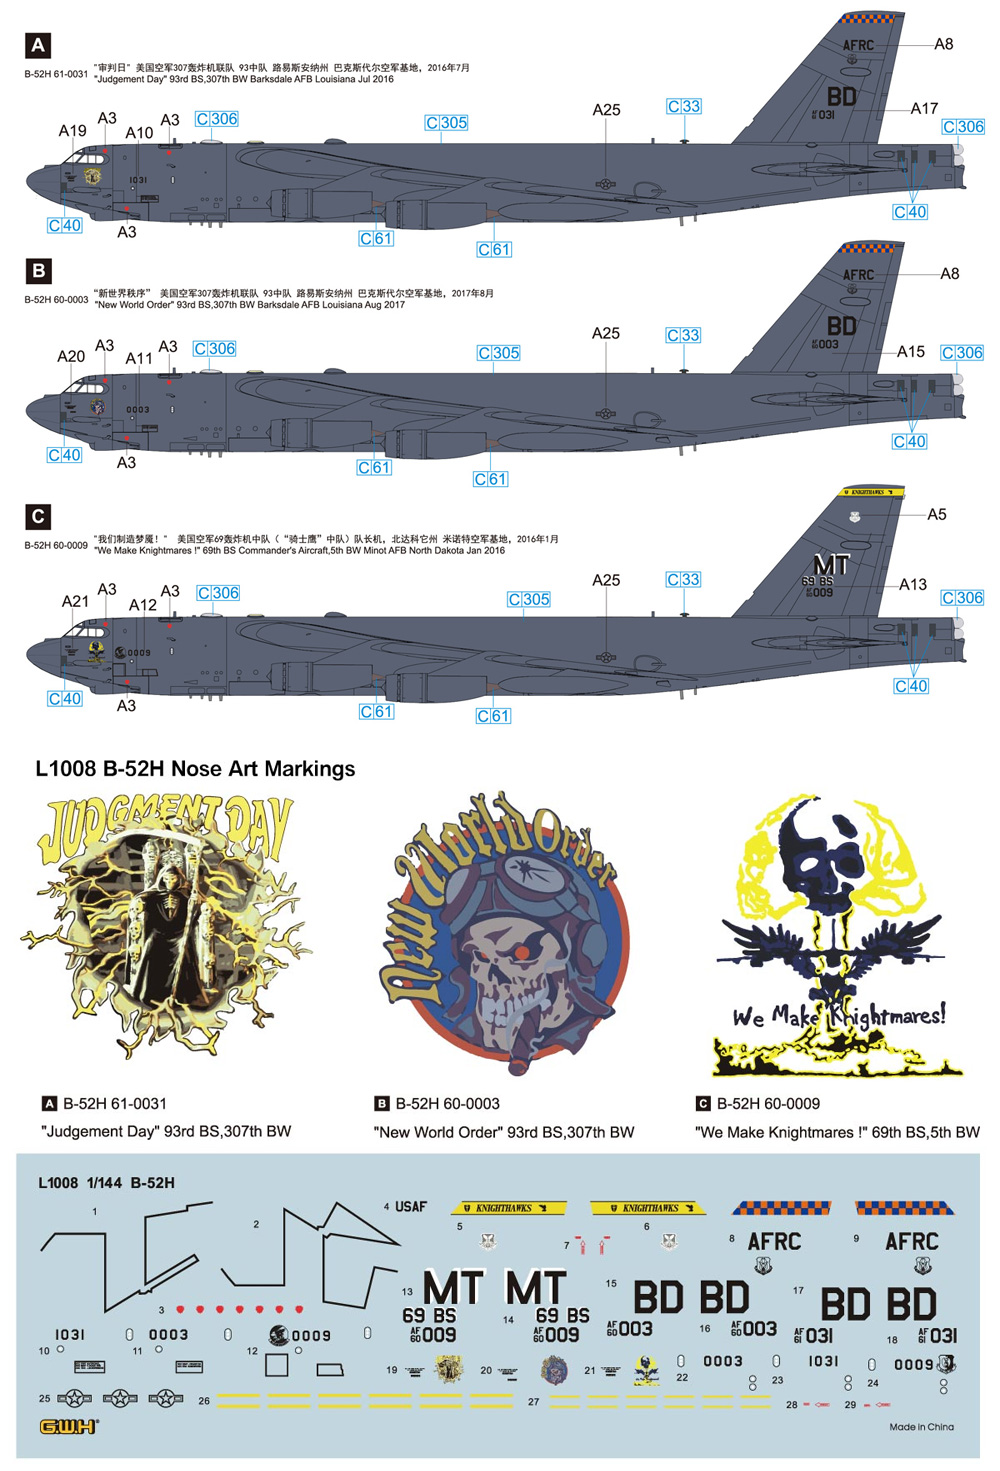 アメリカ空軍 B-52H 戦略爆撃機 プラモデル (グレートウォールホビー 1/144 エアクラフト プラモデル No.L1008) 商品画像_1